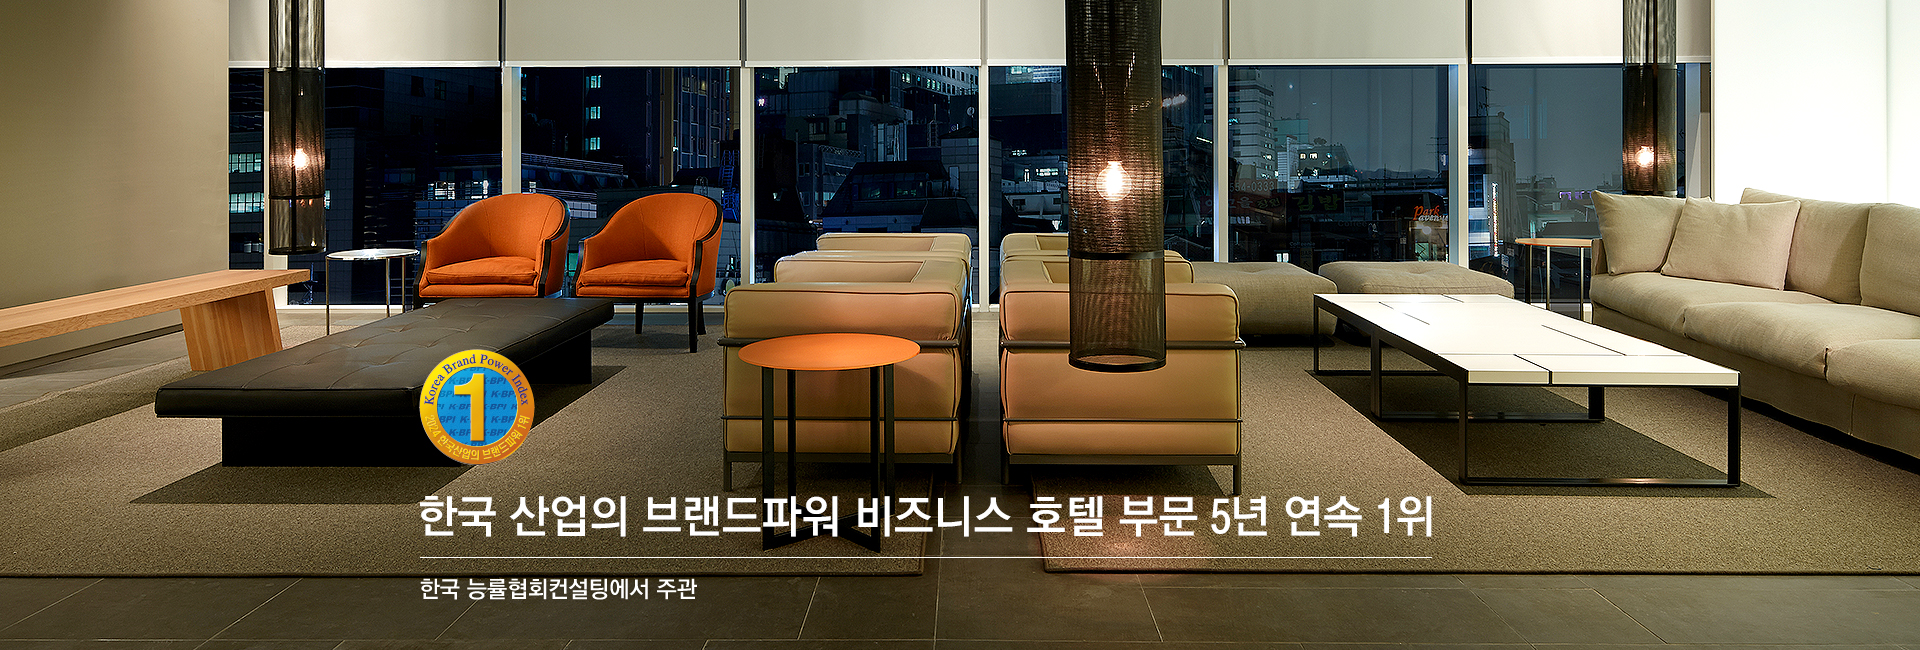 한국 산업의 브랜드파워 비즈니스 호텔 부문 5년 연속 1위